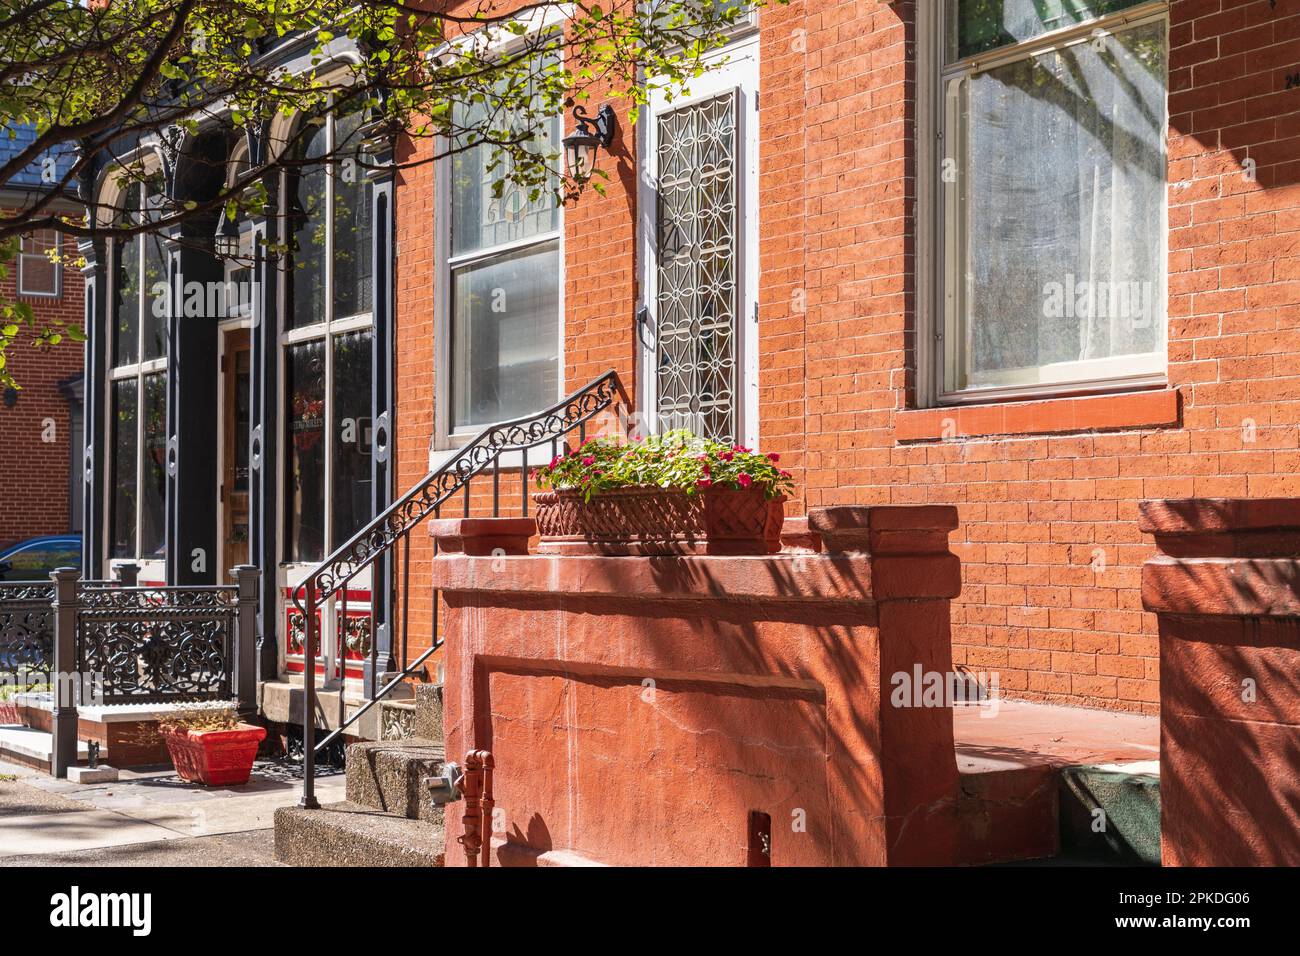 Case ed edifici in mattoni rossi con stoppe frontali, ferro battuto decorativo e piantatrici ad Harrisburg, capitale della Pennsylvania USA Foto Stock